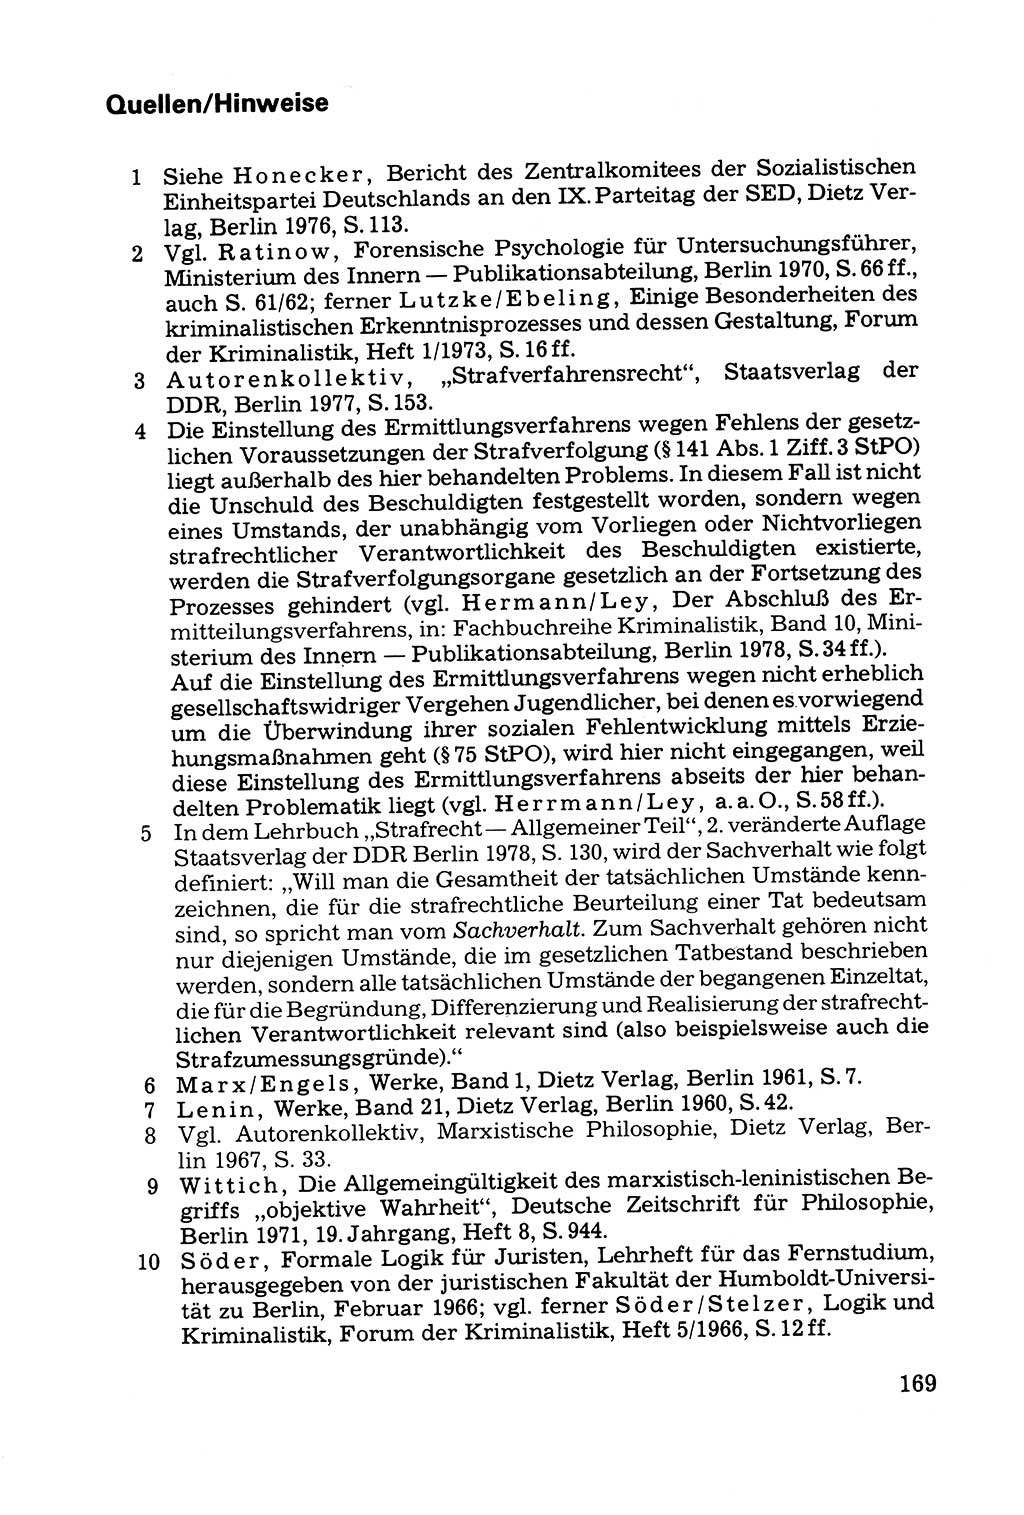 Grundfragen der Beweisführung im Ermittlungsverfahren [Deutsche Demokratische Republik (DDR)] 1980, Seite 169 (Bws.-Fhrg. EV DDR 1980, S. 169)